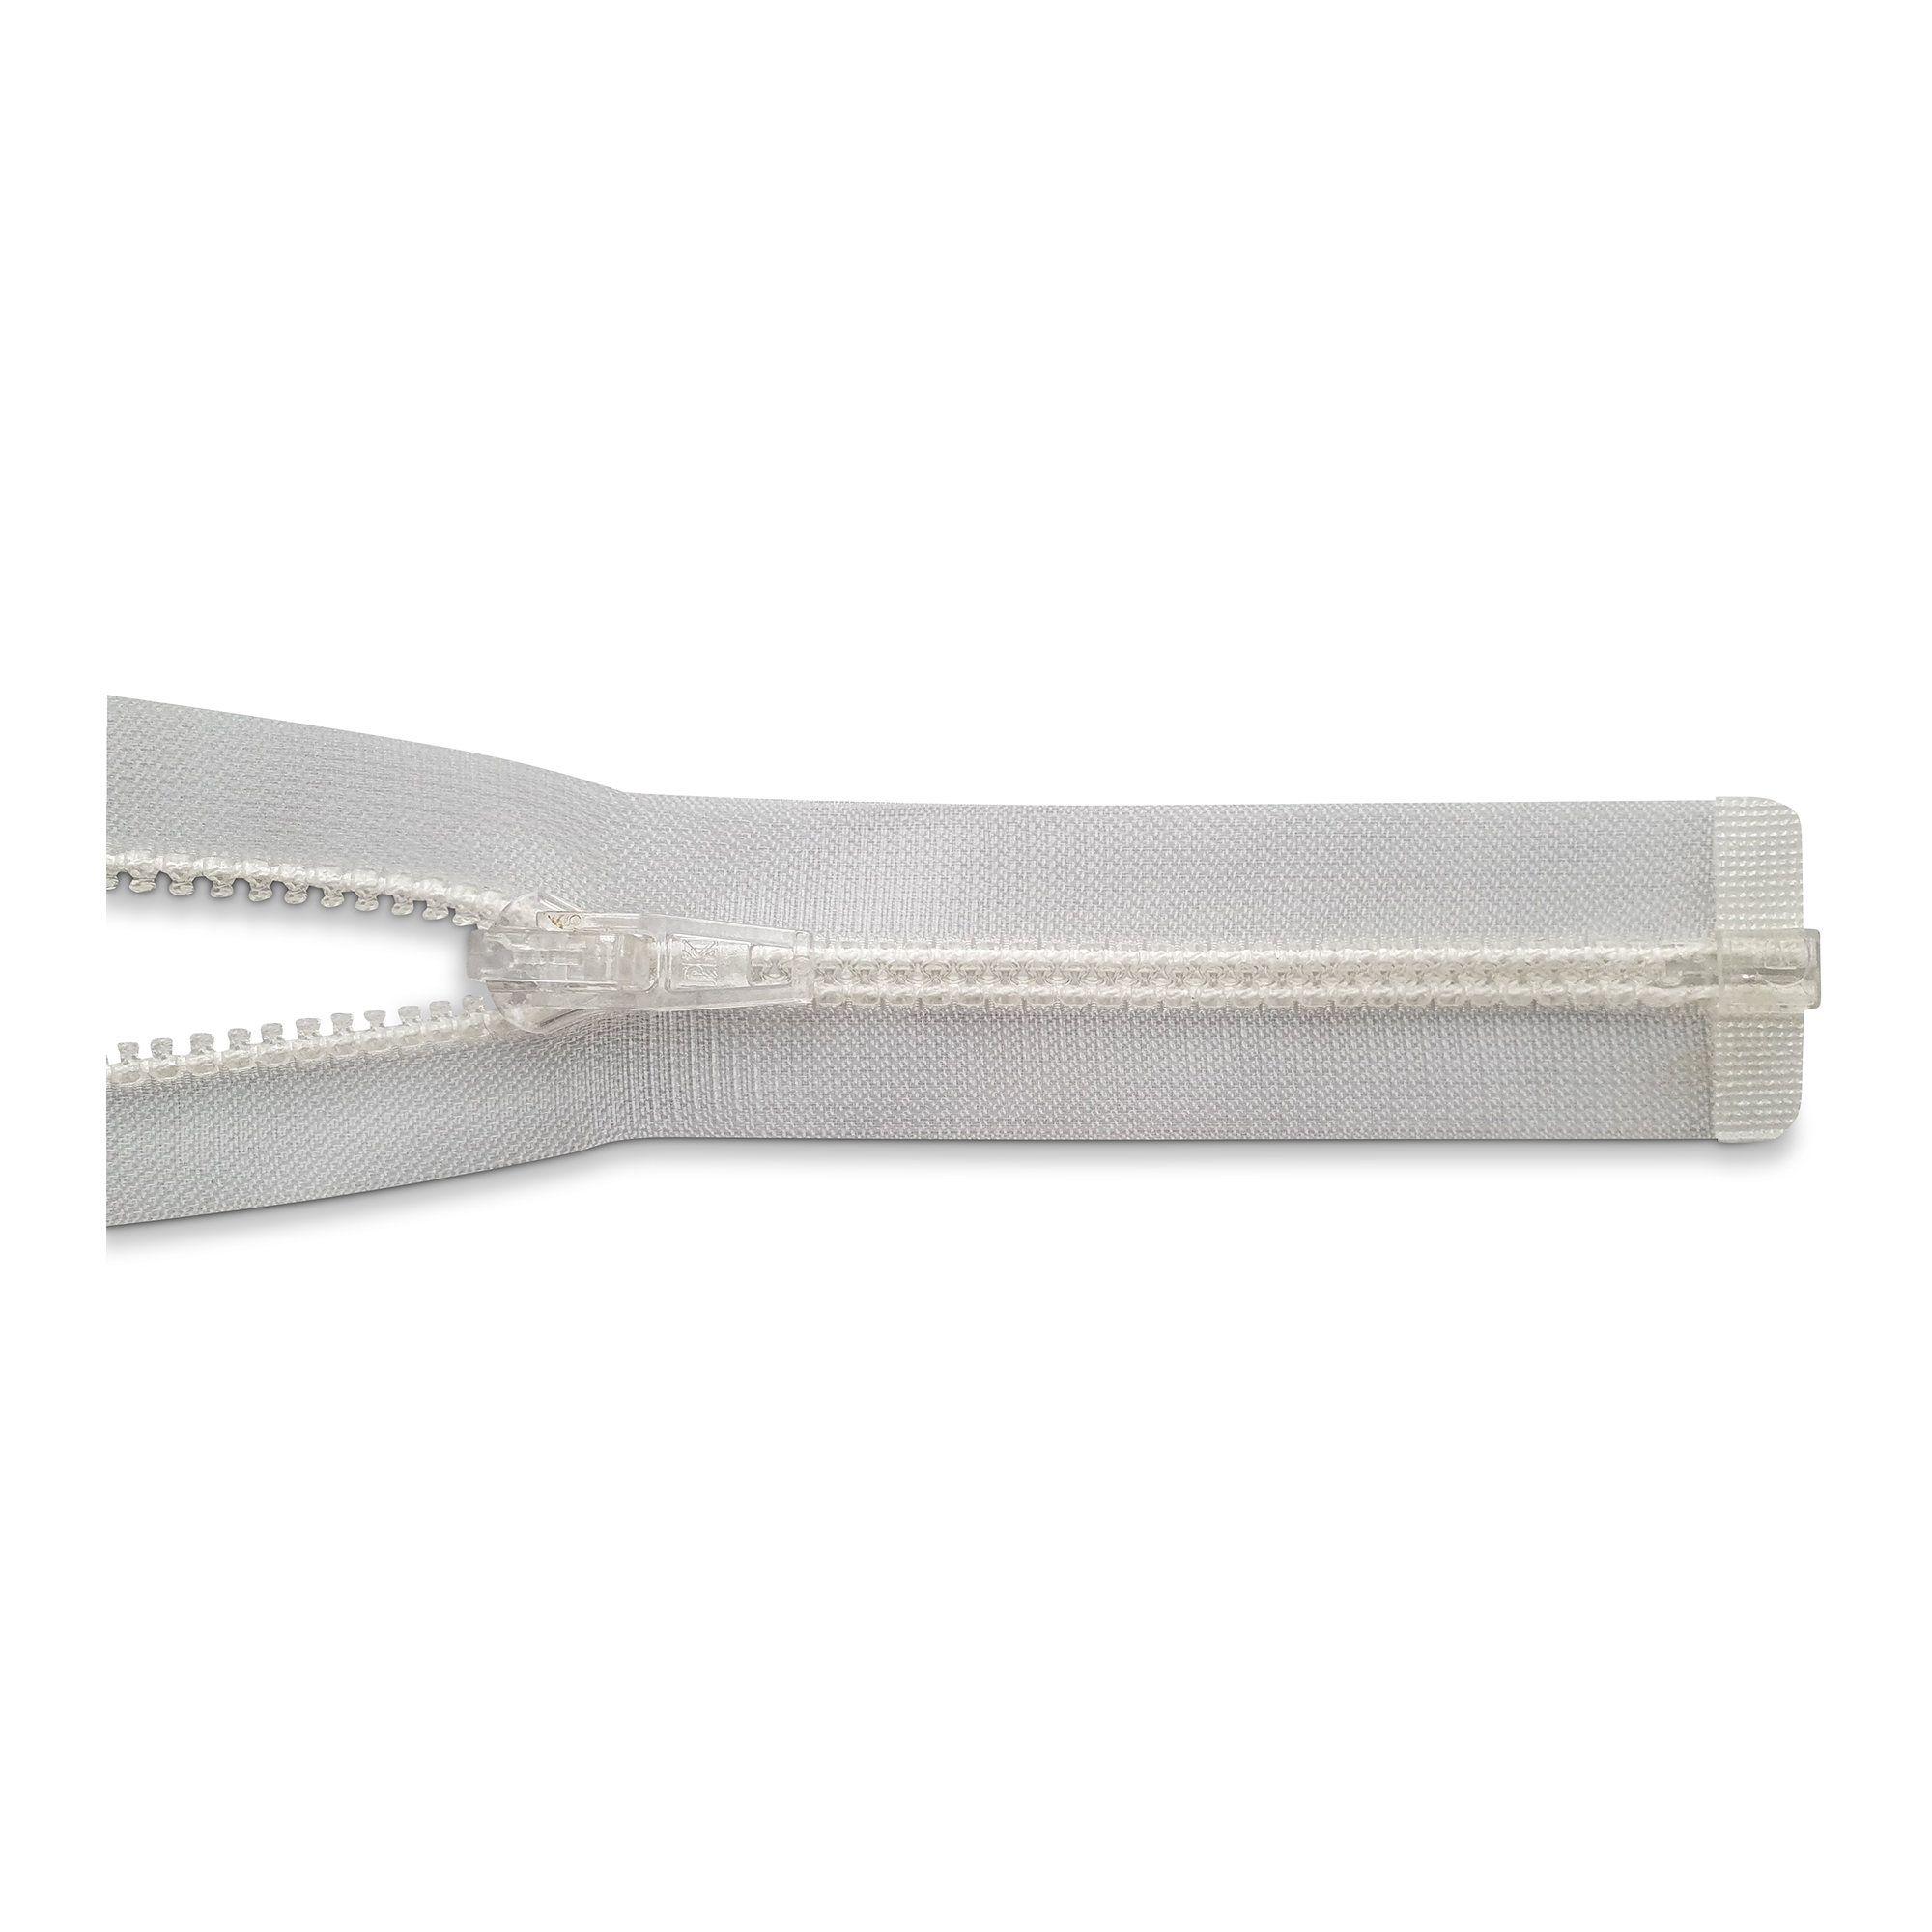 Reißverschluss 100cm, 2-Wege, K.stoff Zähne breit, transparent, hochwertiger Marken-Reißverschluss von Rubi/Barcelona